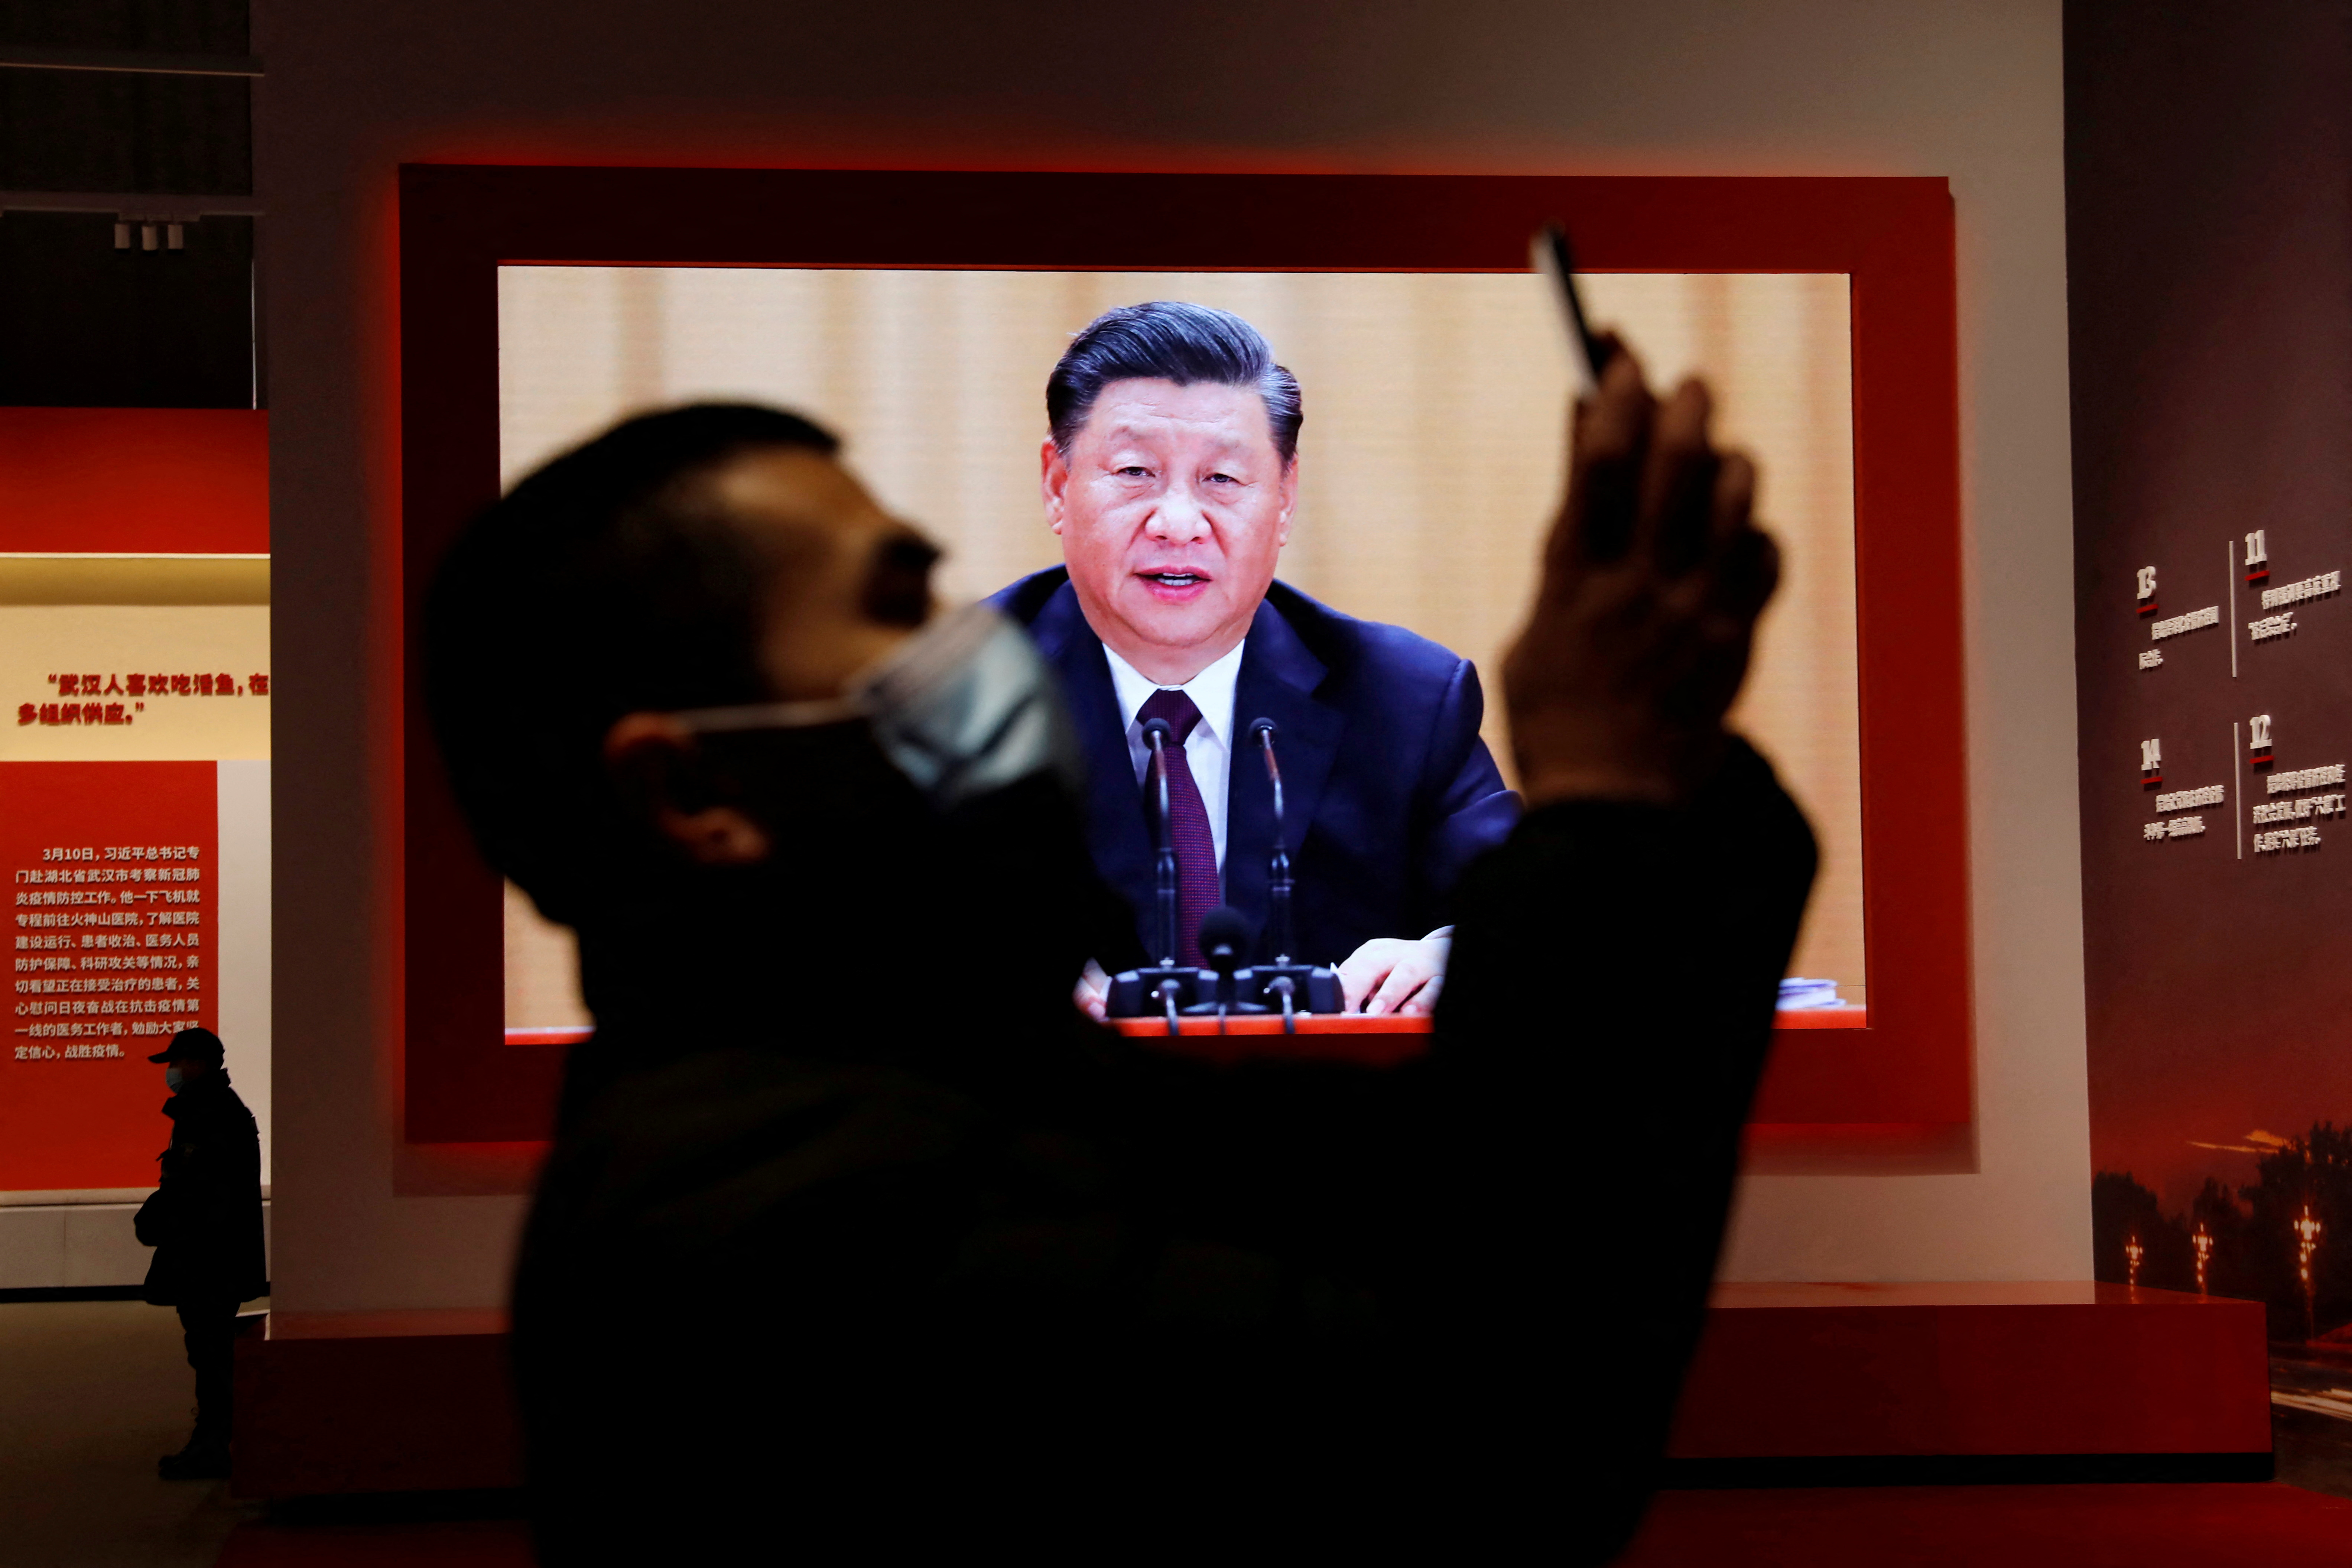 FOTO DE ARCHIVO: Un visitante sostiene su teléfono móvil cerca de una pantalla que muestra al presidente chino Xi Jinping durante una exposición sobre la lucha contra el COVID-19, cuya política de Covid Cero está golpeando nuevamente la economía de China (Reuters)